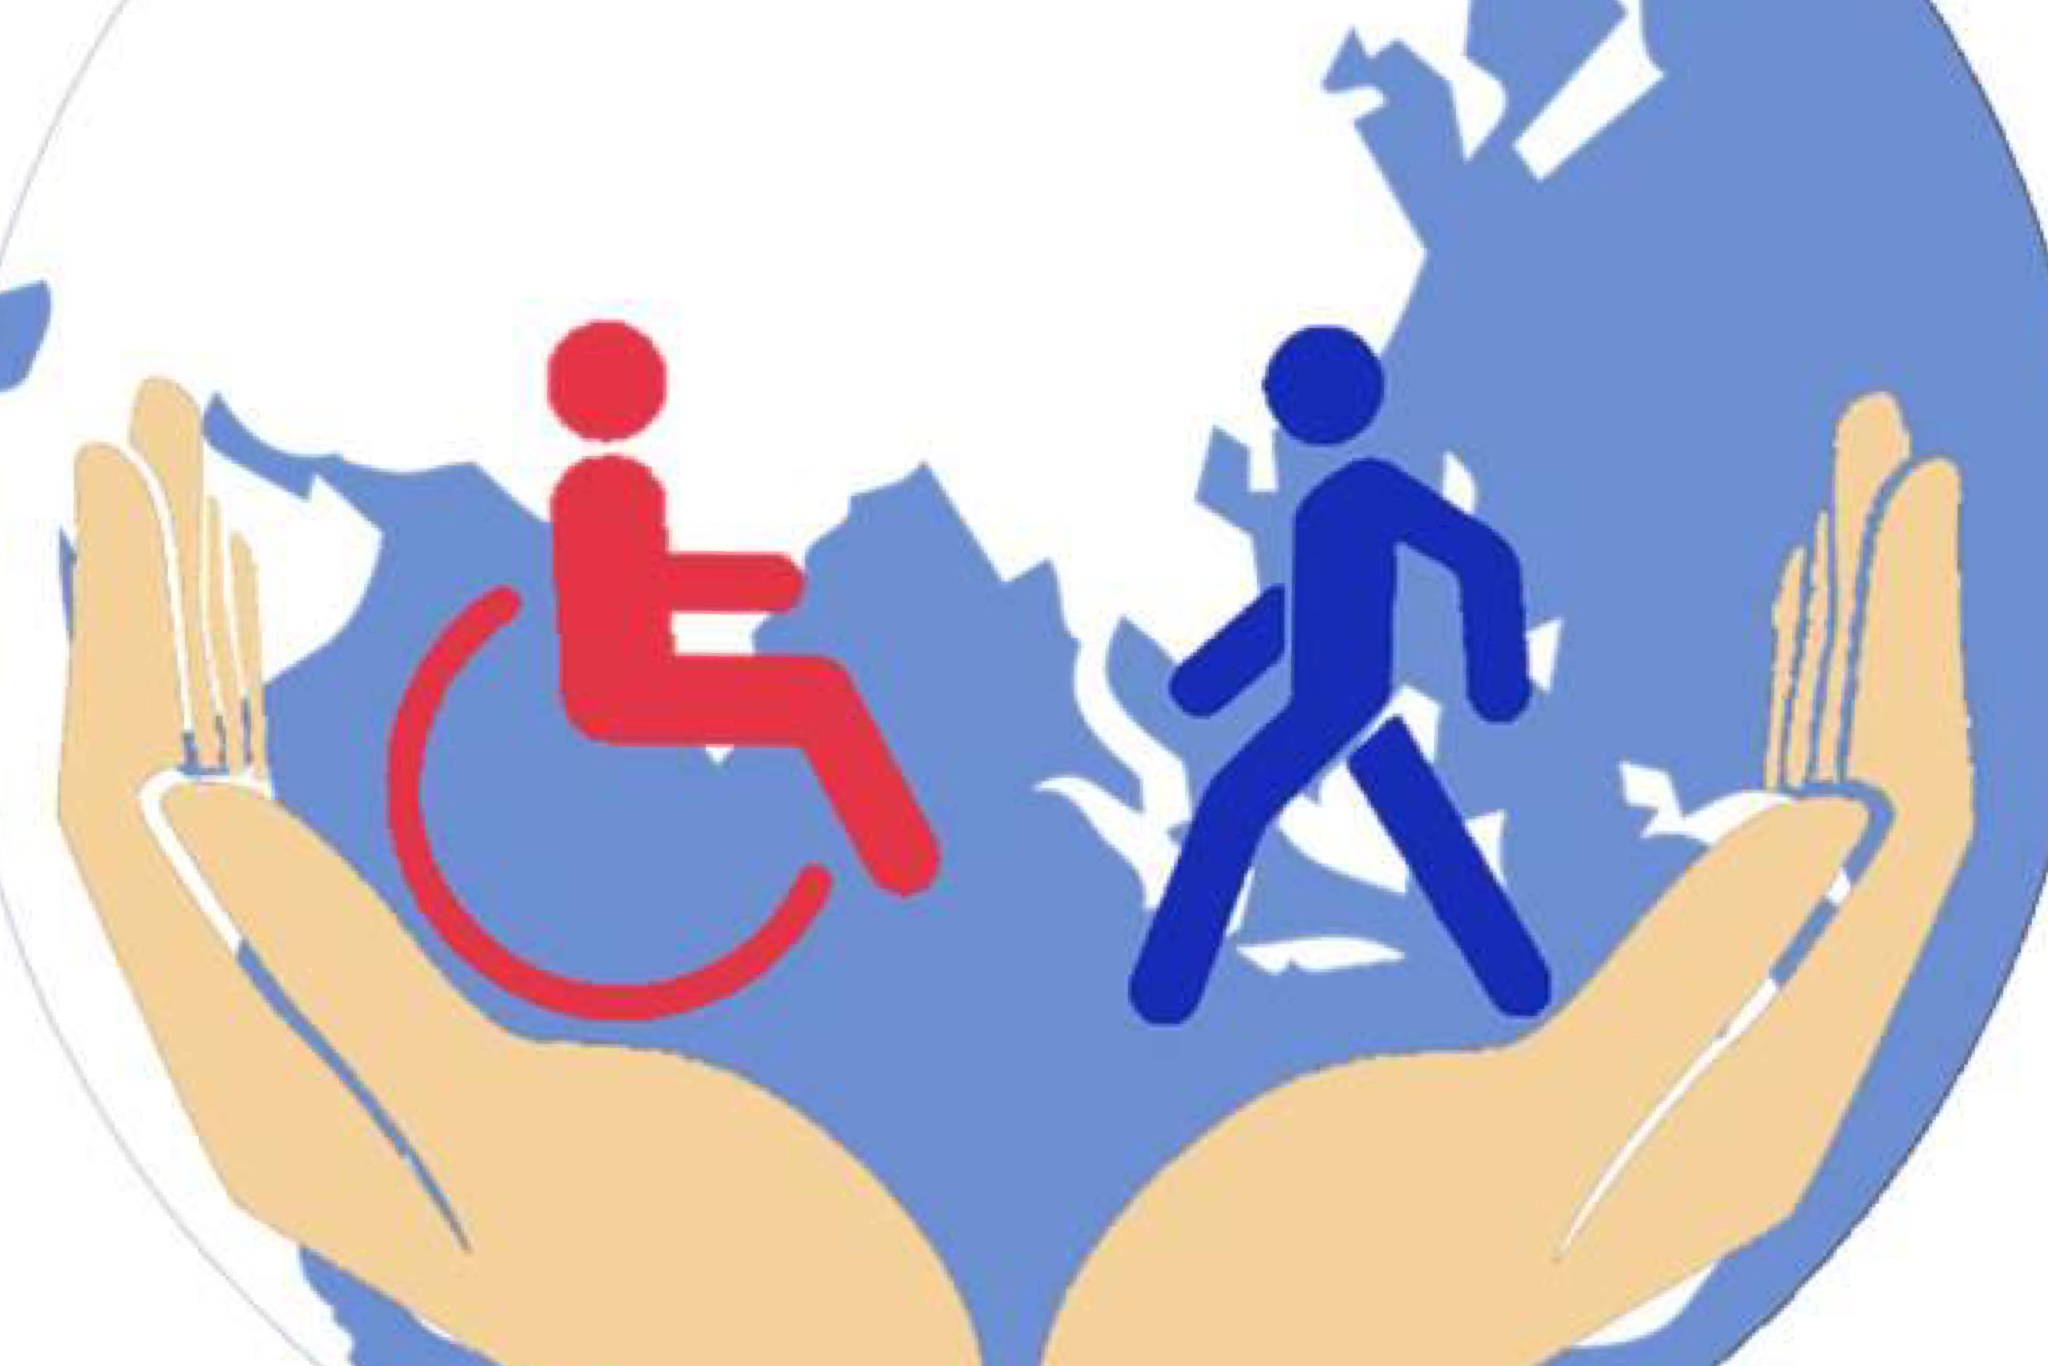 Лицо с ограниченными возможностями развития это. Защита инвалидов. Соц защита инвалидов. Инвалиды в социуме. Социальная защита людей с ограниченными возможностями.